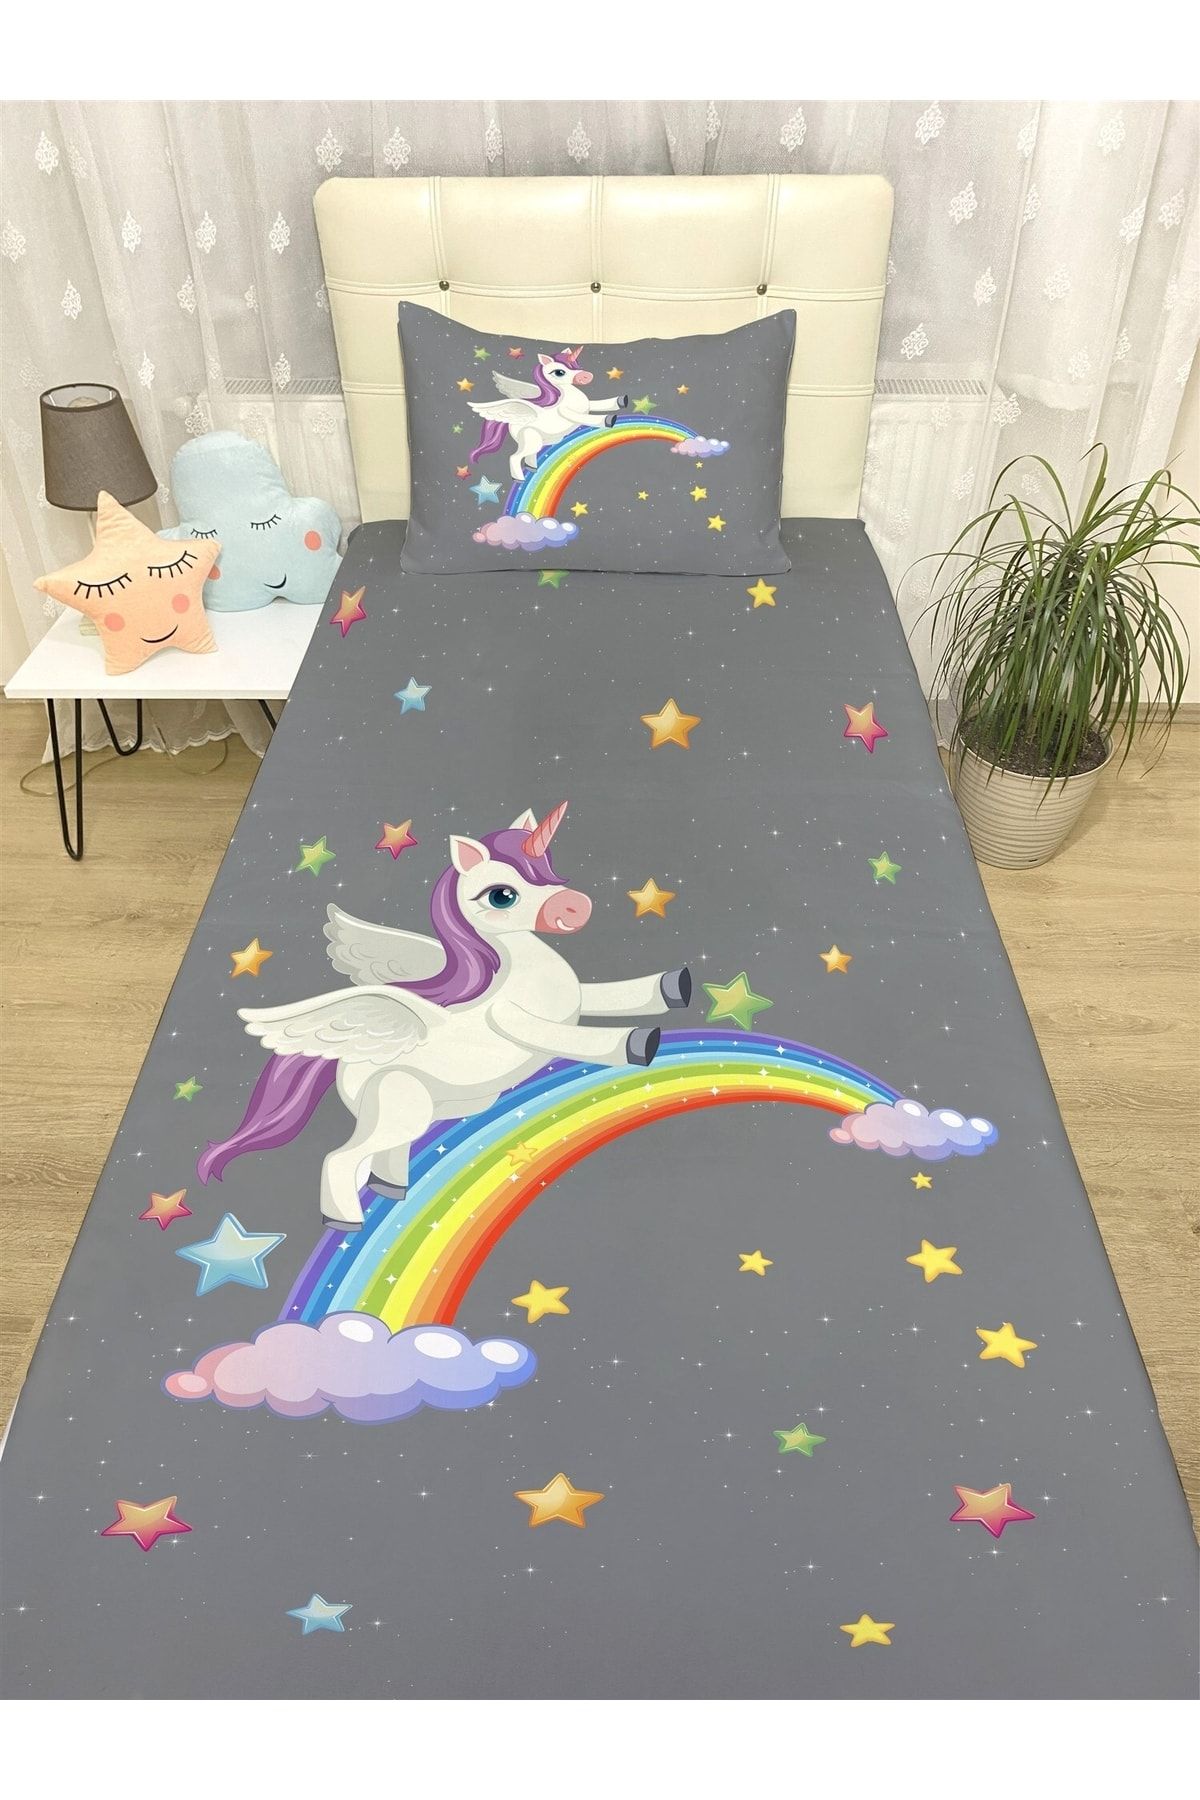 Evpanya Ay Ve Gökkuşağında Uçan Unicorn Desenli Yatak Örtüsü Ve Yastık Kılıfı